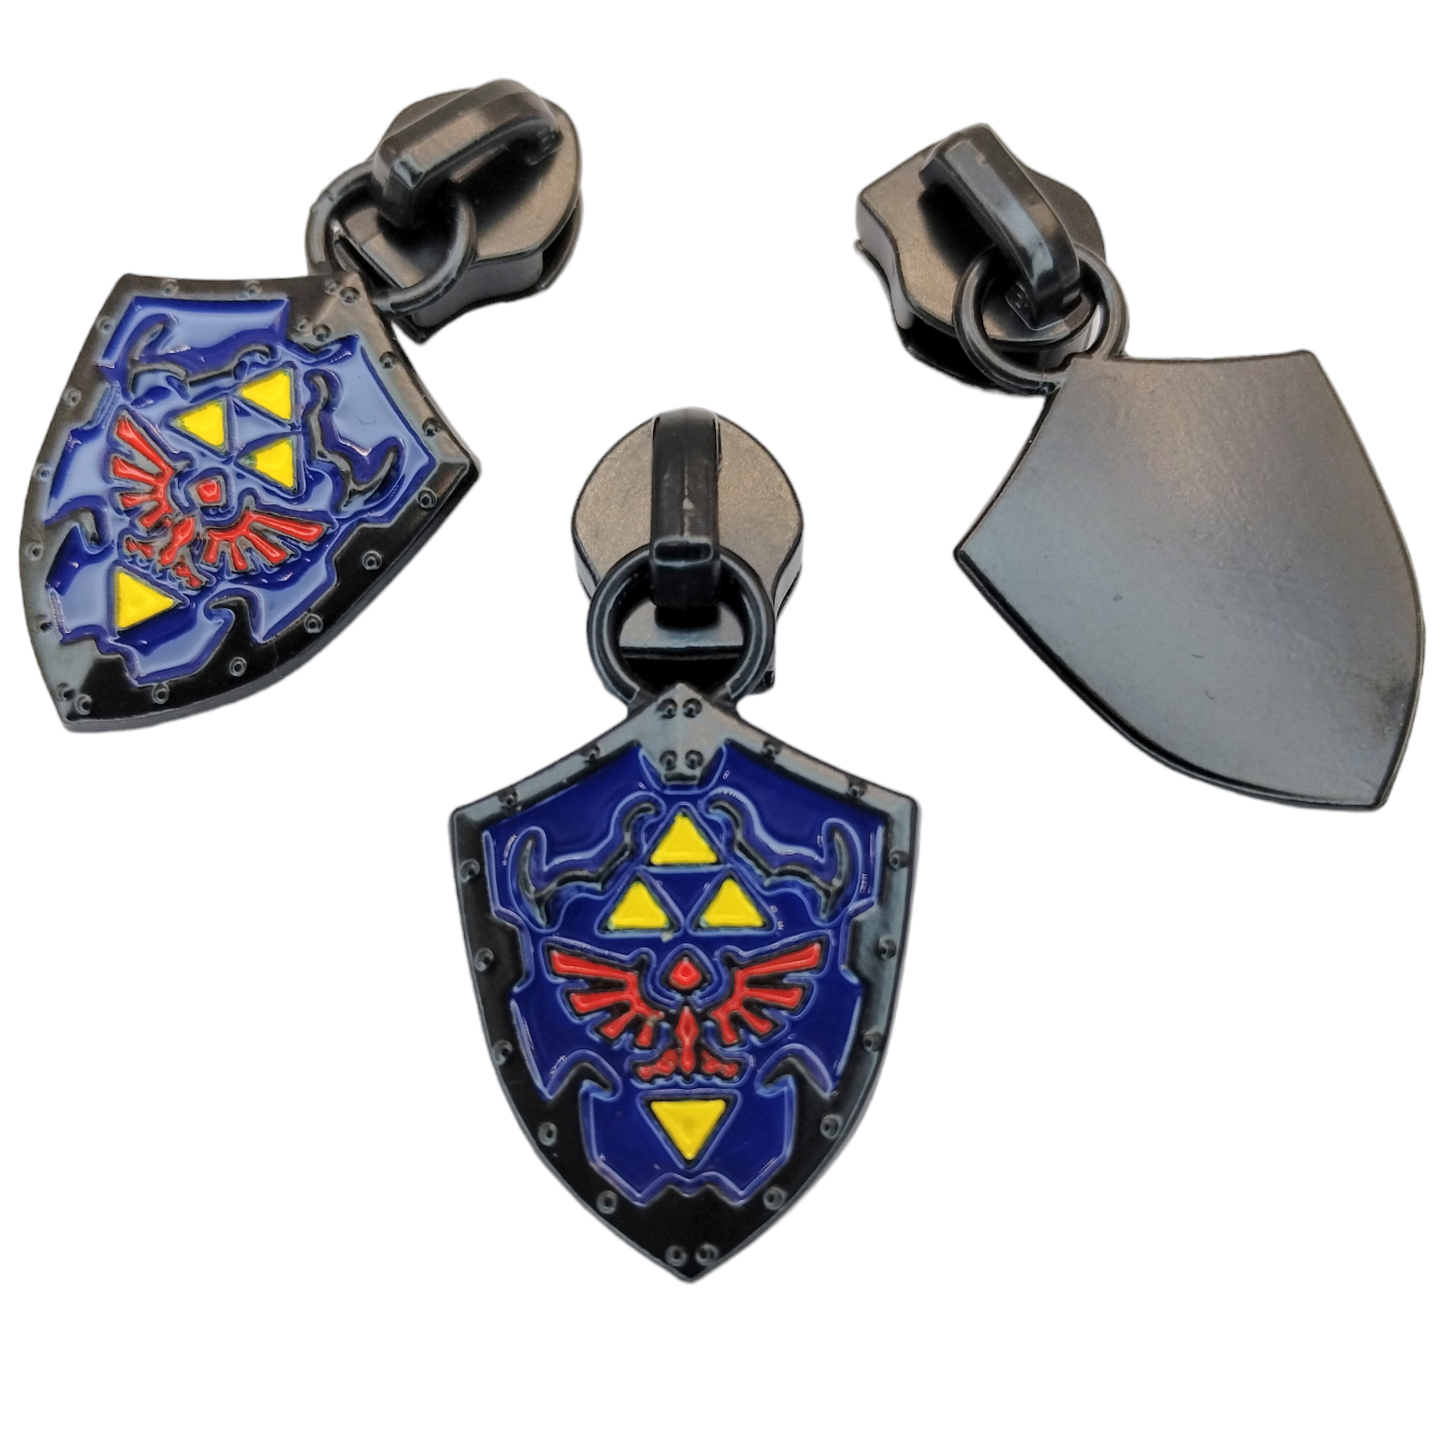 #5 Time Hero's Shield with Enamel Nylon Zipper Pulls - 3pcs Atelier Fiber Arts